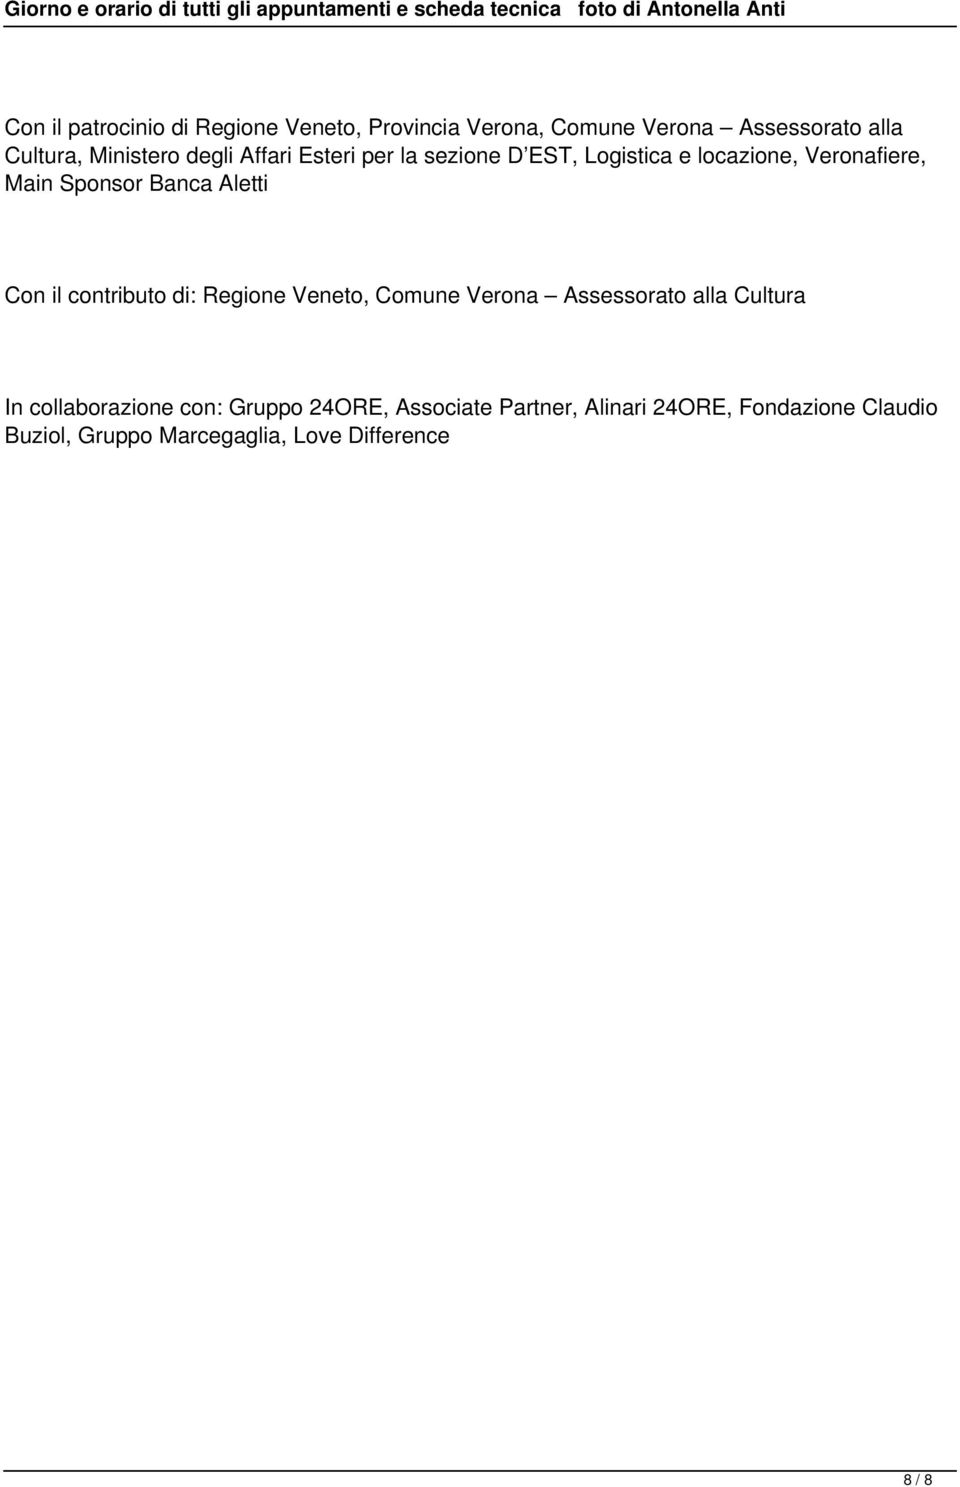 Con il contributo di: Regione Veneto, Comune Verona Assessorato alla Cultura In collaborazione con: Gruppo